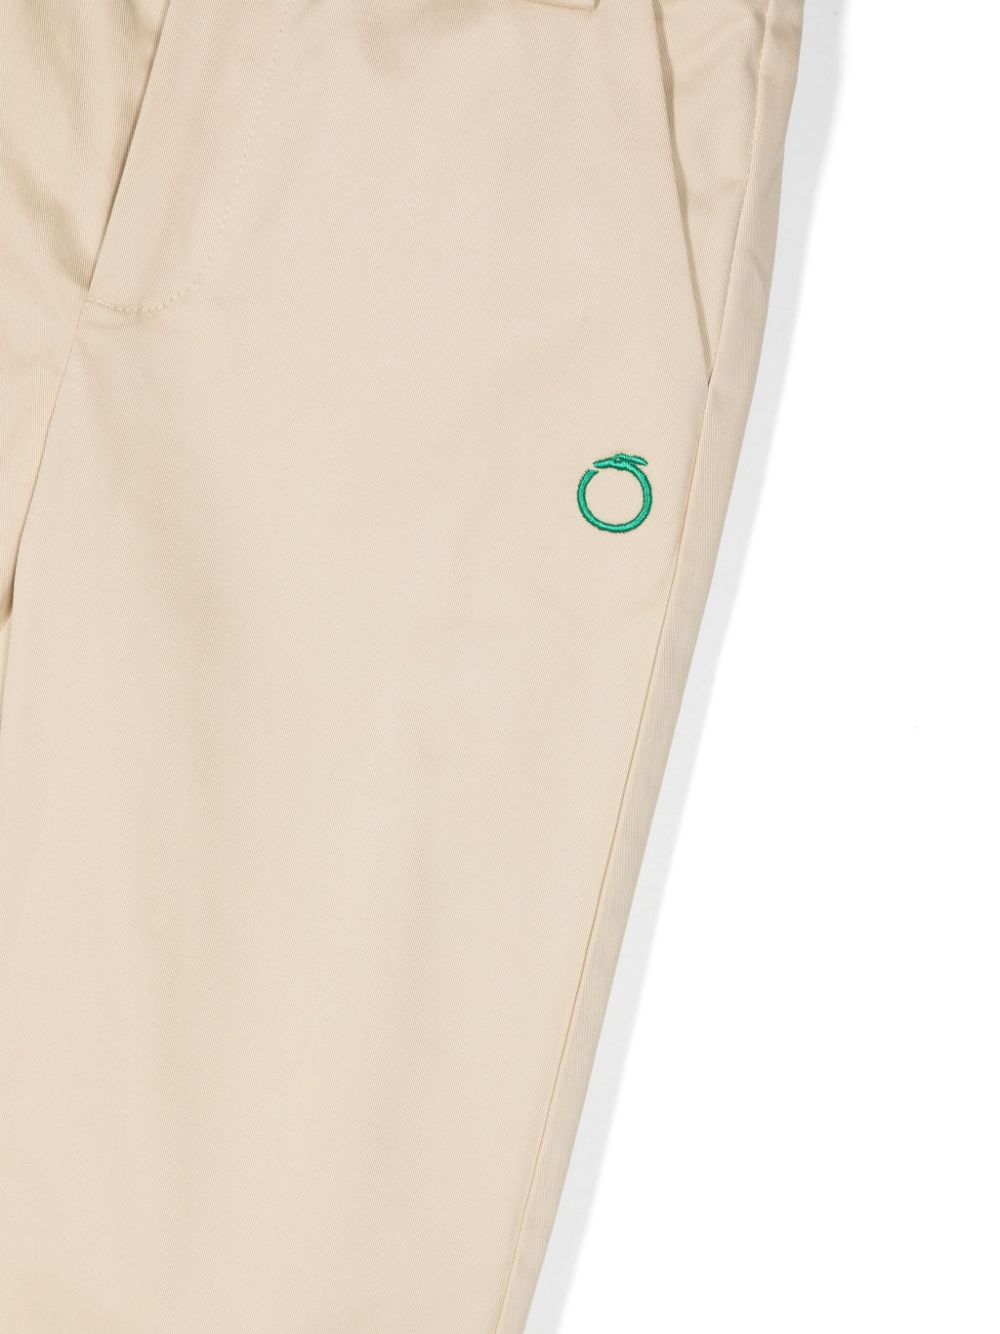 Pantalone beige per bambino con logo verde